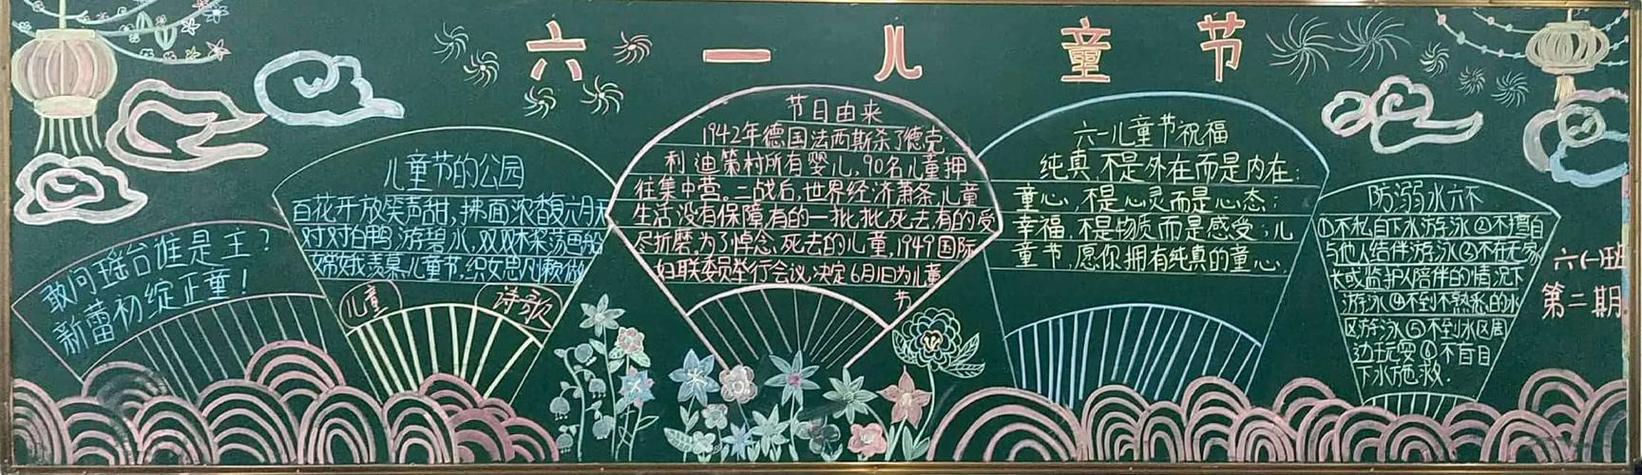 放飞童年梦想我的中国梦庆六一系列活动之黑板报